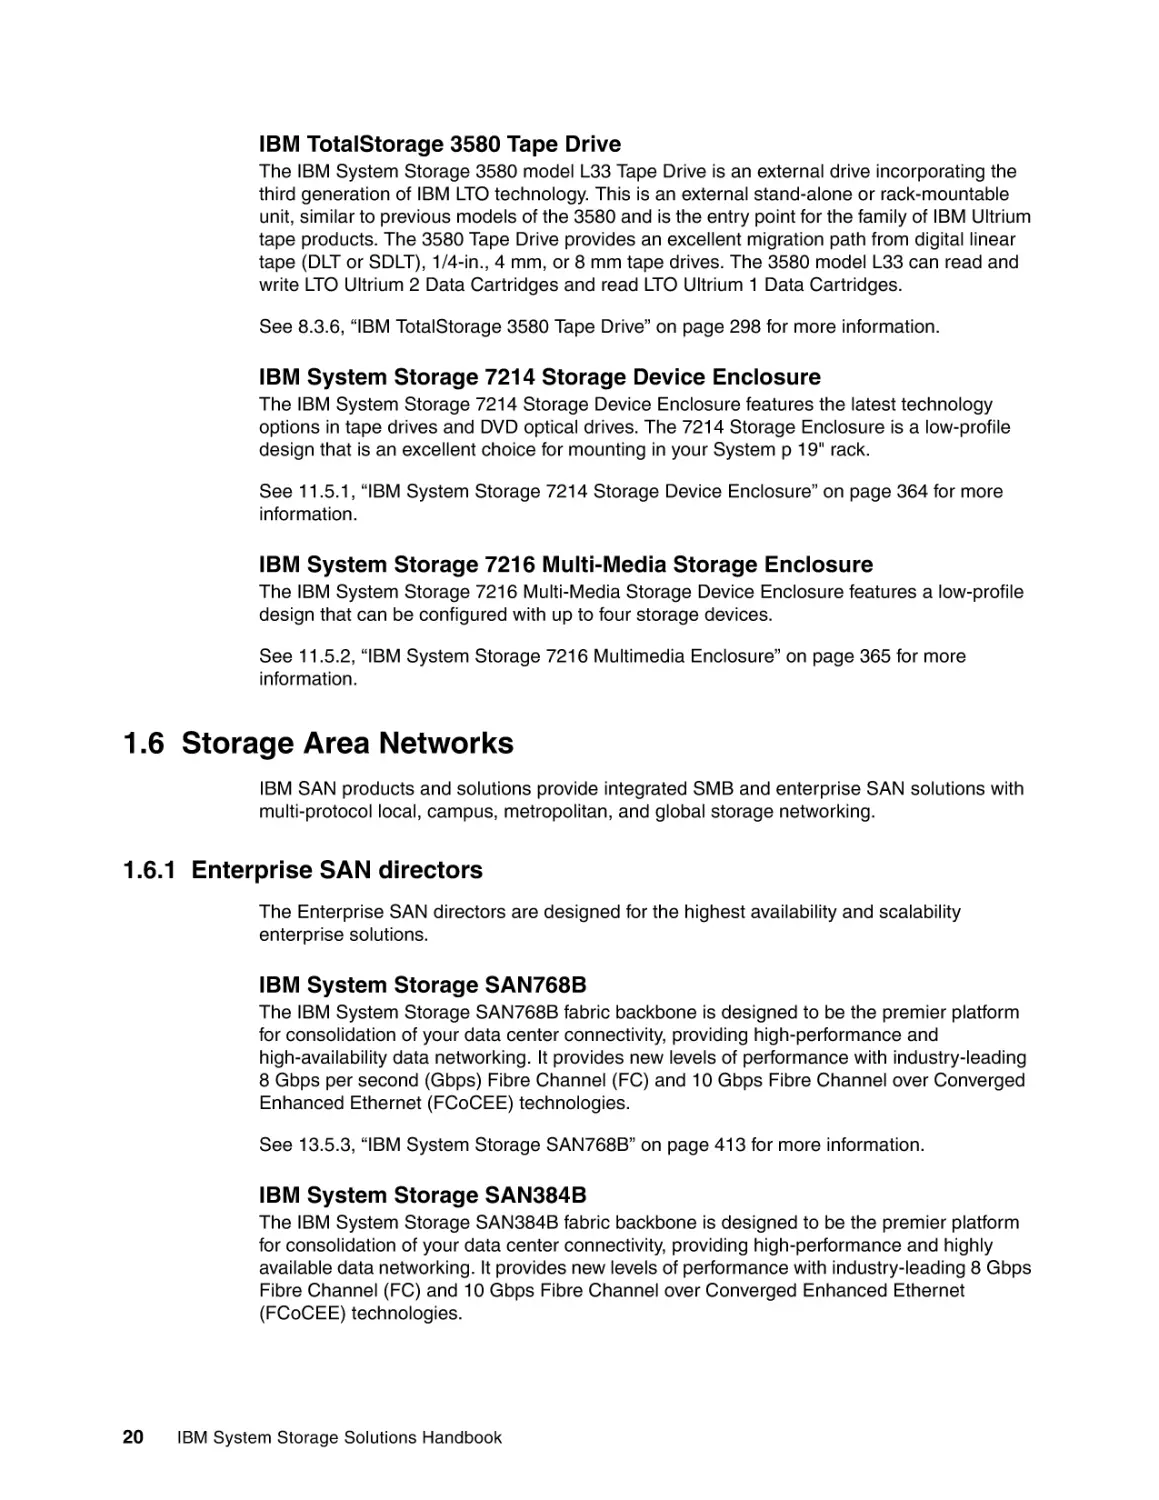 1.6 Storage Area Networks
1.6.1 Enterprise SAN directors